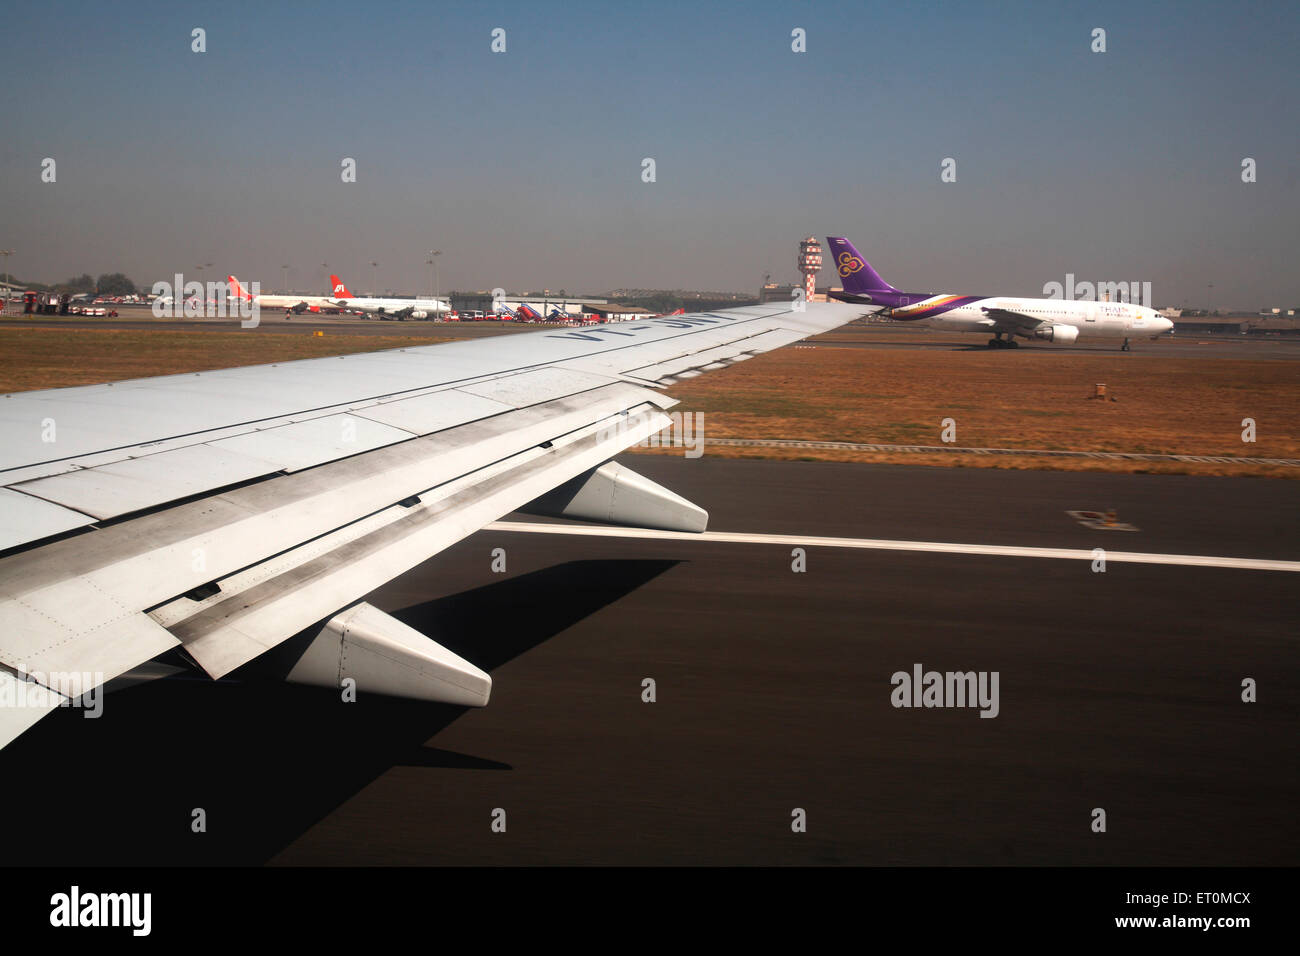 Aile d'avion, aile d'avion, aile d'avion, Ahmedabad, Gujarat, Inde, avion indien Banque D'Images